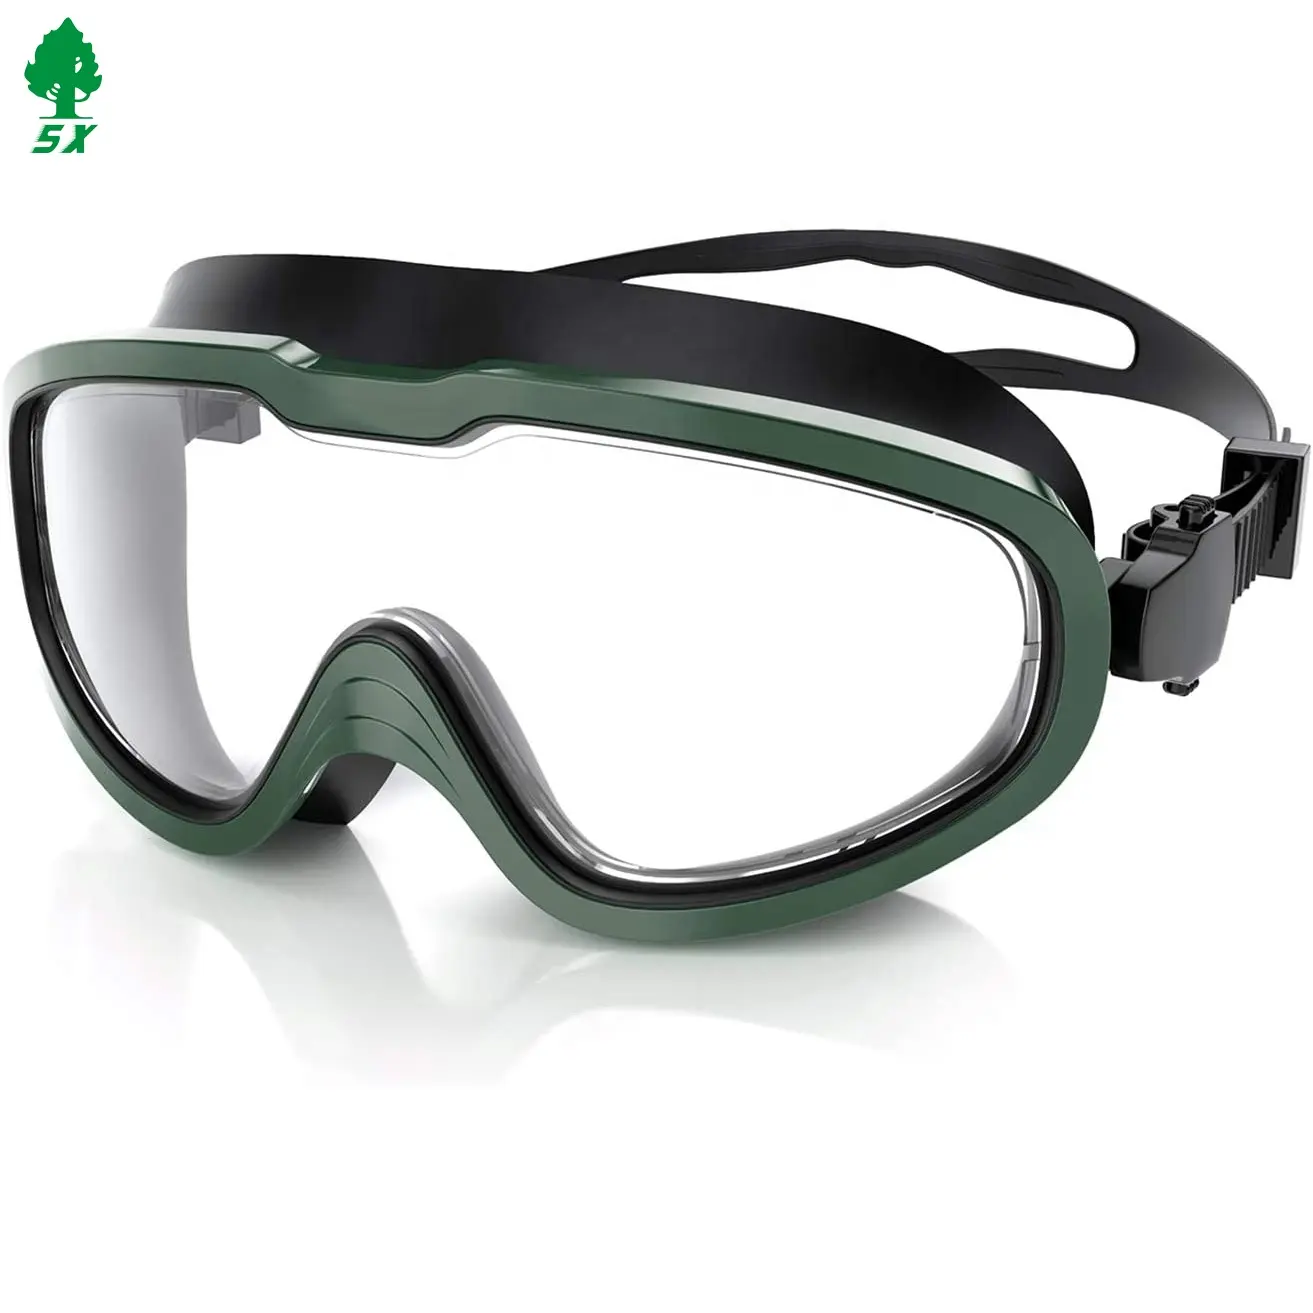 نظارات سباحة بعدسات كاملة توريد مباشر من مصنع Songxin نظارات سباحة بعدسات عرض واسعة مضادة للخدش ومضادة للضباب